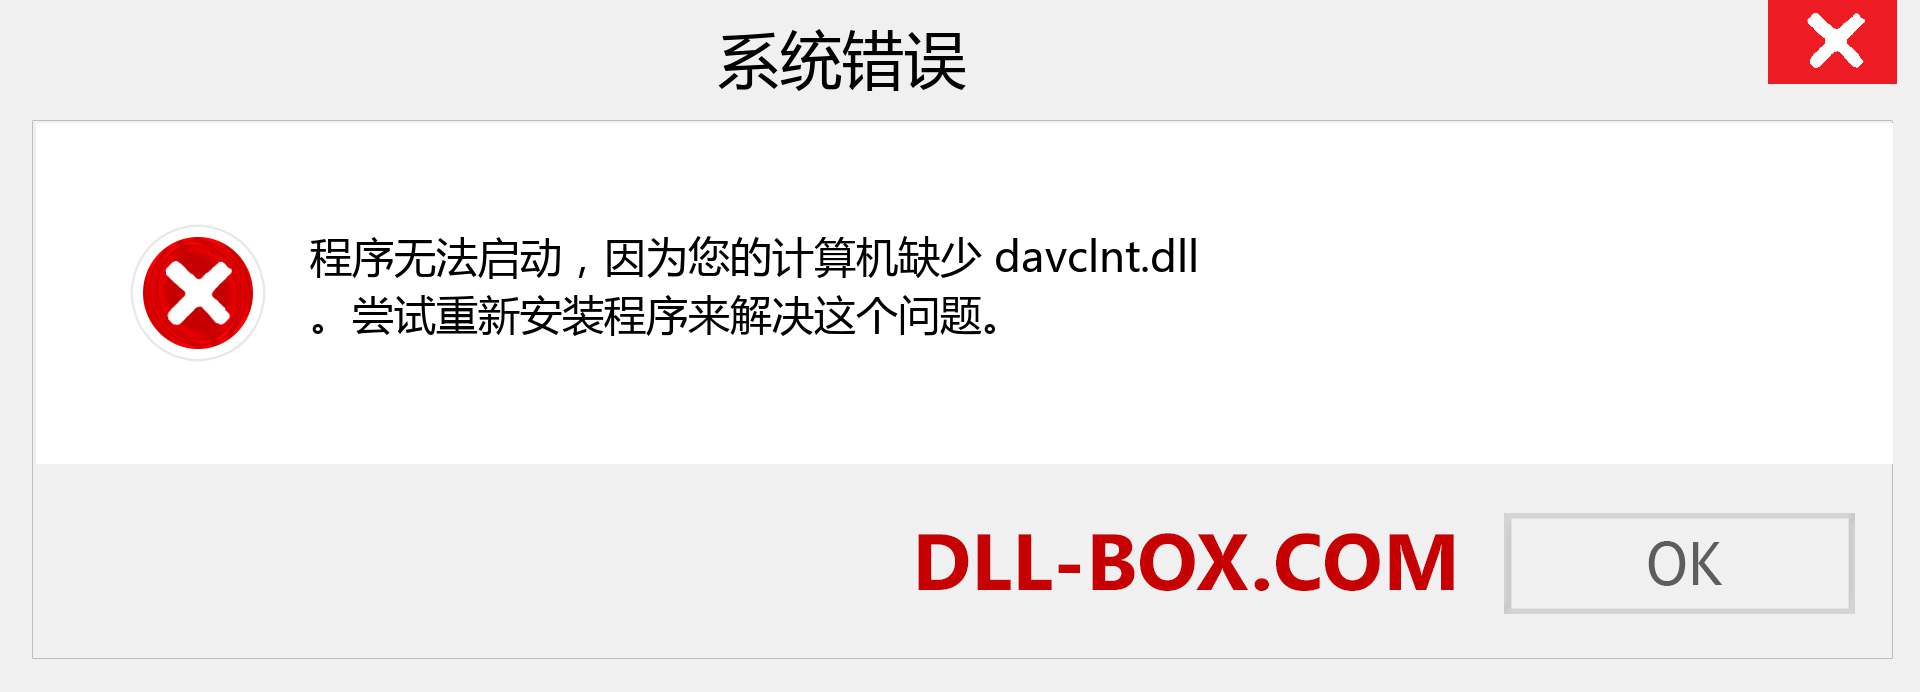 davclnt.dll 文件丢失？。 适用于 Windows 7、8、10 的下载 - 修复 Windows、照片、图像上的 davclnt dll 丢失错误